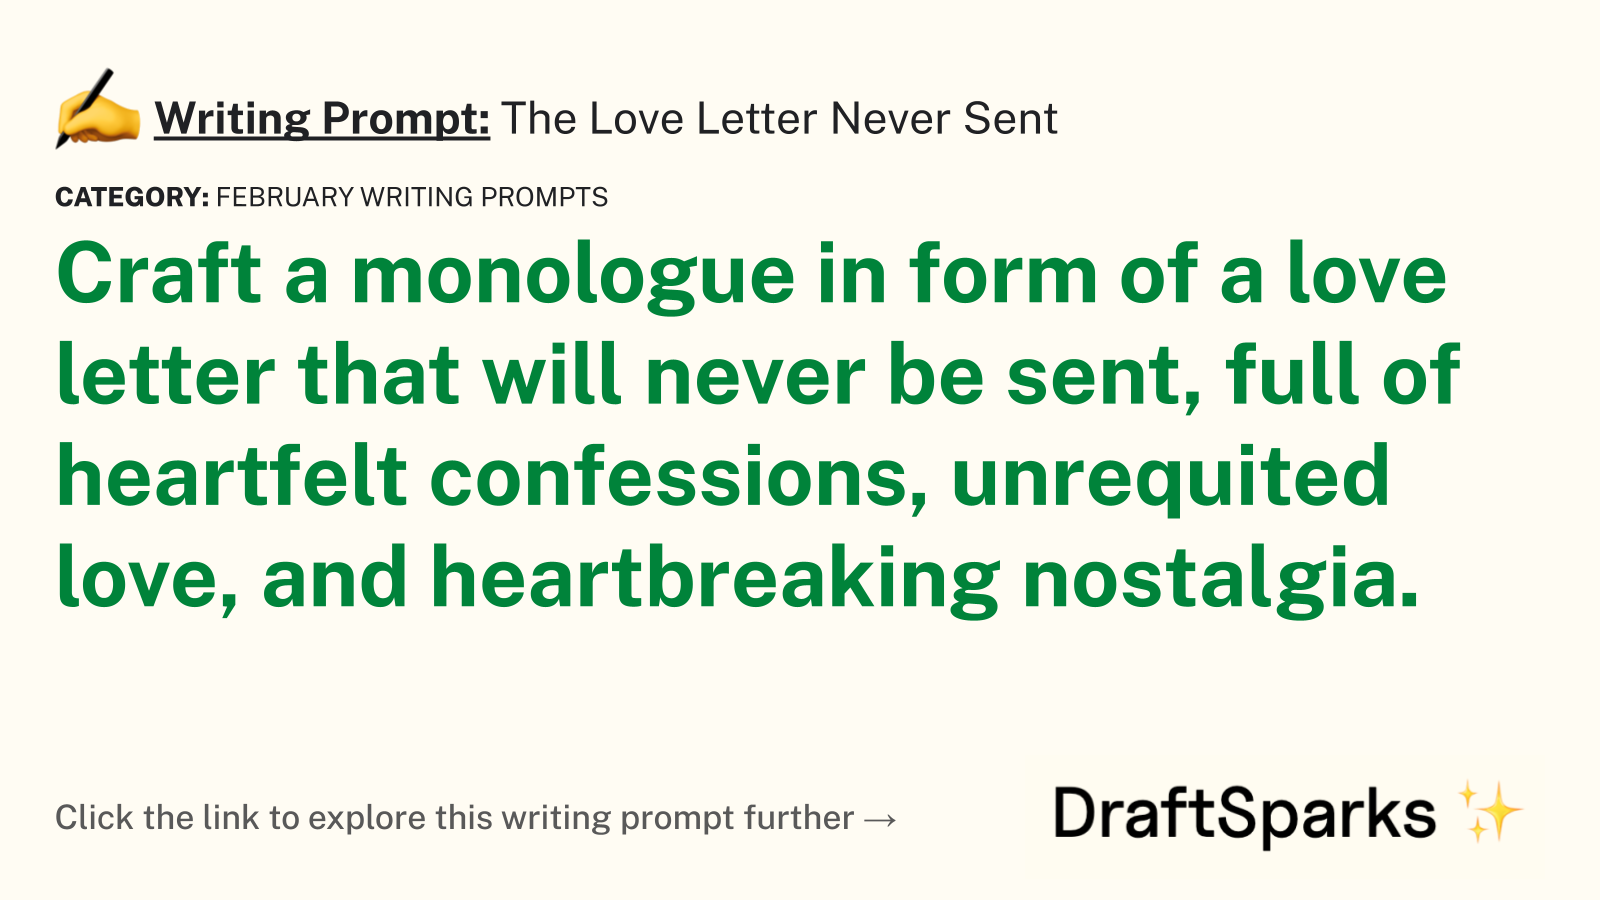 The Love Letter Never Sent